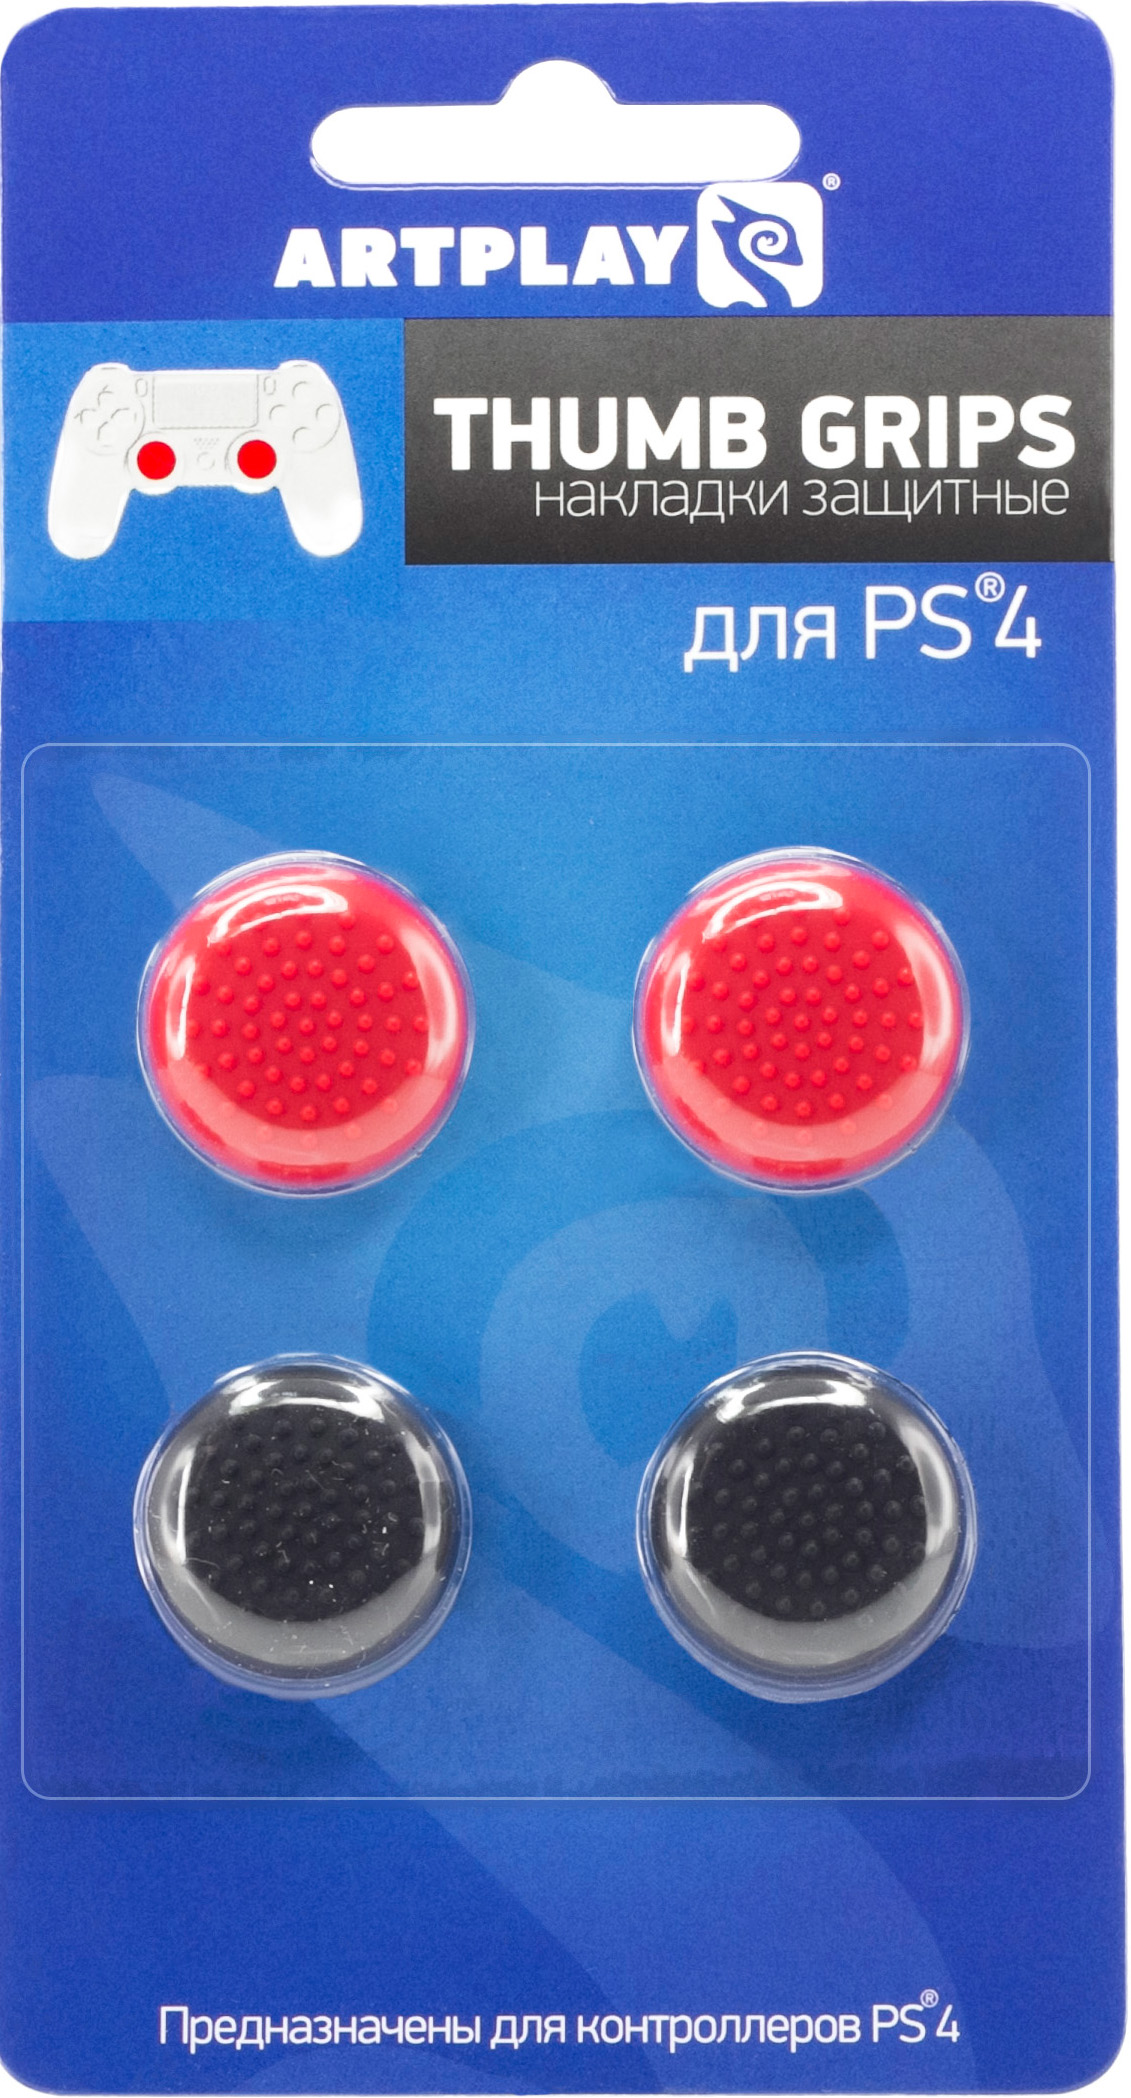 Накладки Artplays Thumb Grips защитные на джойстики геймпада для PS4 (4 шт., 2 красных + 2 черных) от 1С Интерес